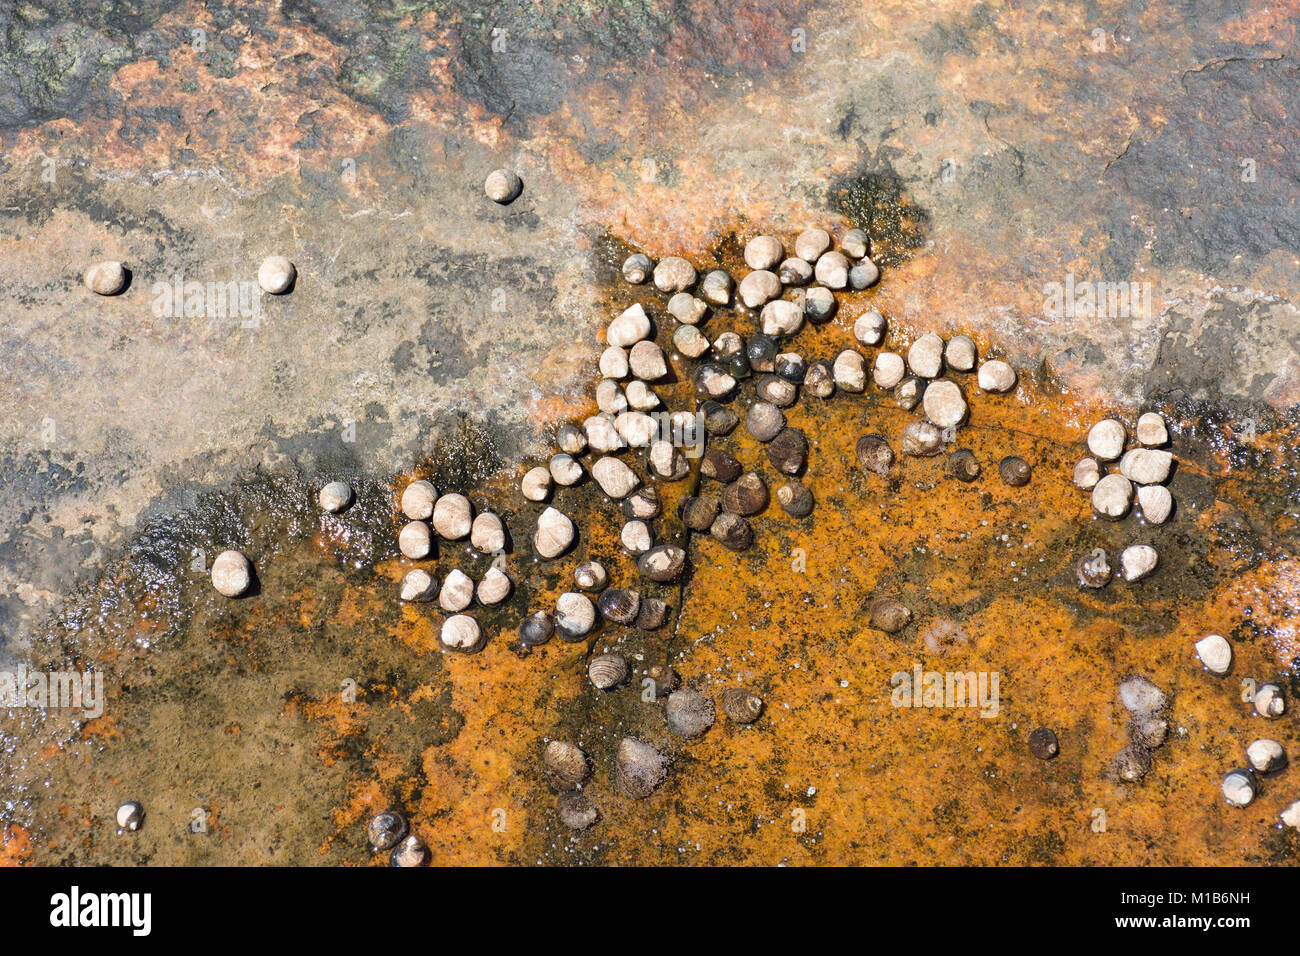 Les escargots gastéropodes ou sur la surface d'un rocher, certains d'entre eux submergés dans une flaque d'eau Banque D'Images